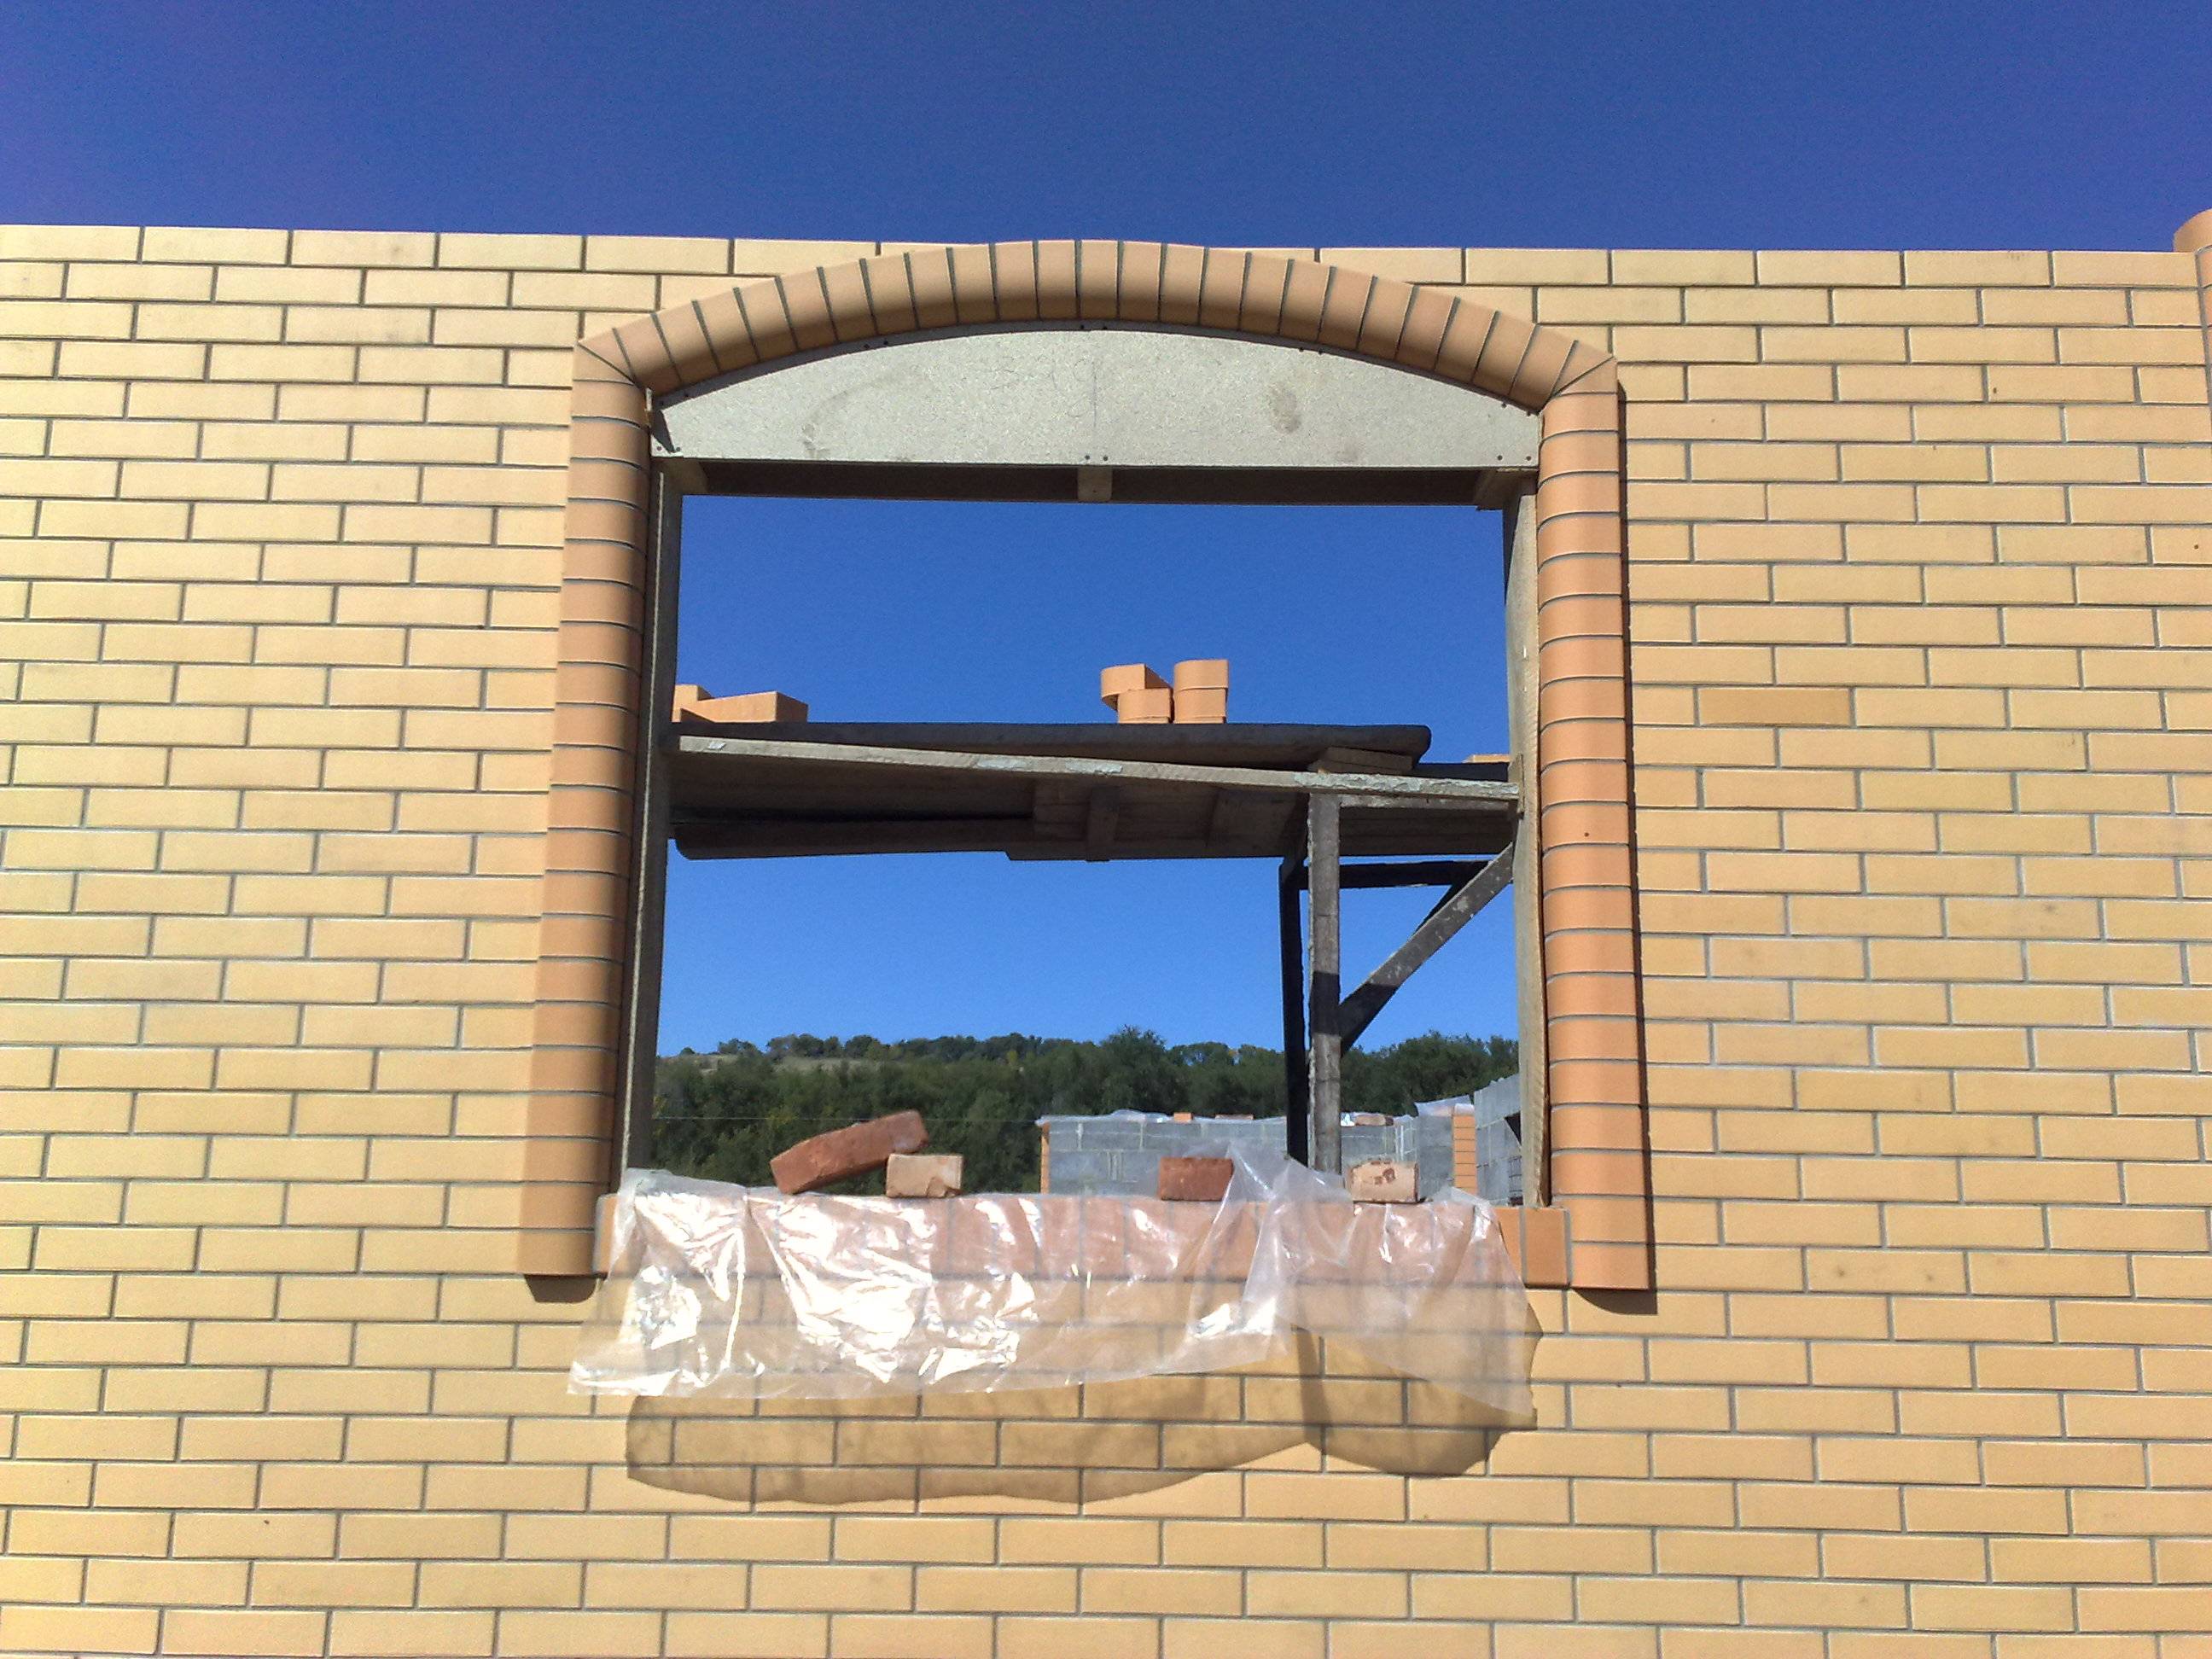 Как производится обрамление окон на фасаде дома облицовочным кирпичом + фото кладки